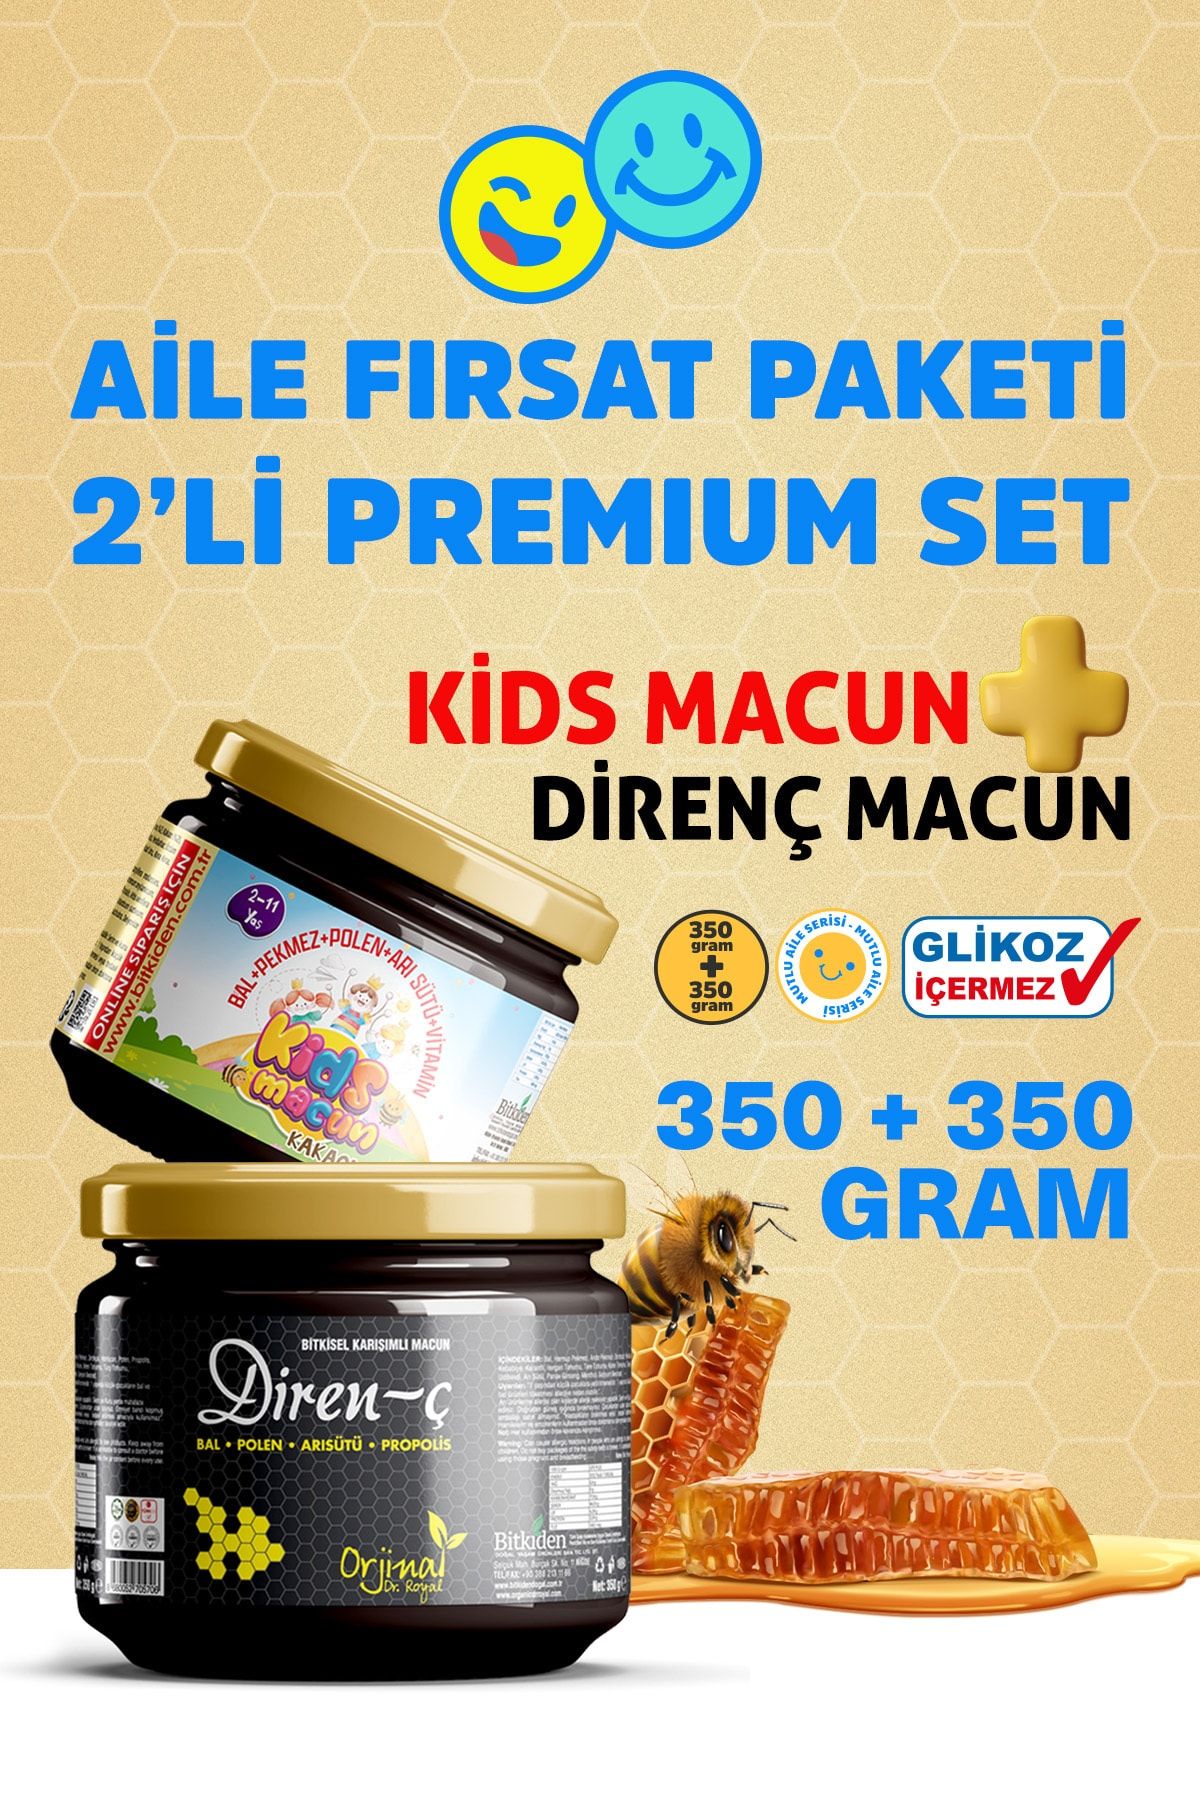 NLife 2 Li Set Kids Macun Çocuklara Özel Ve Orjinal Dr. Royal Direnç Macun Glikoz Içermez 2x350 Gr